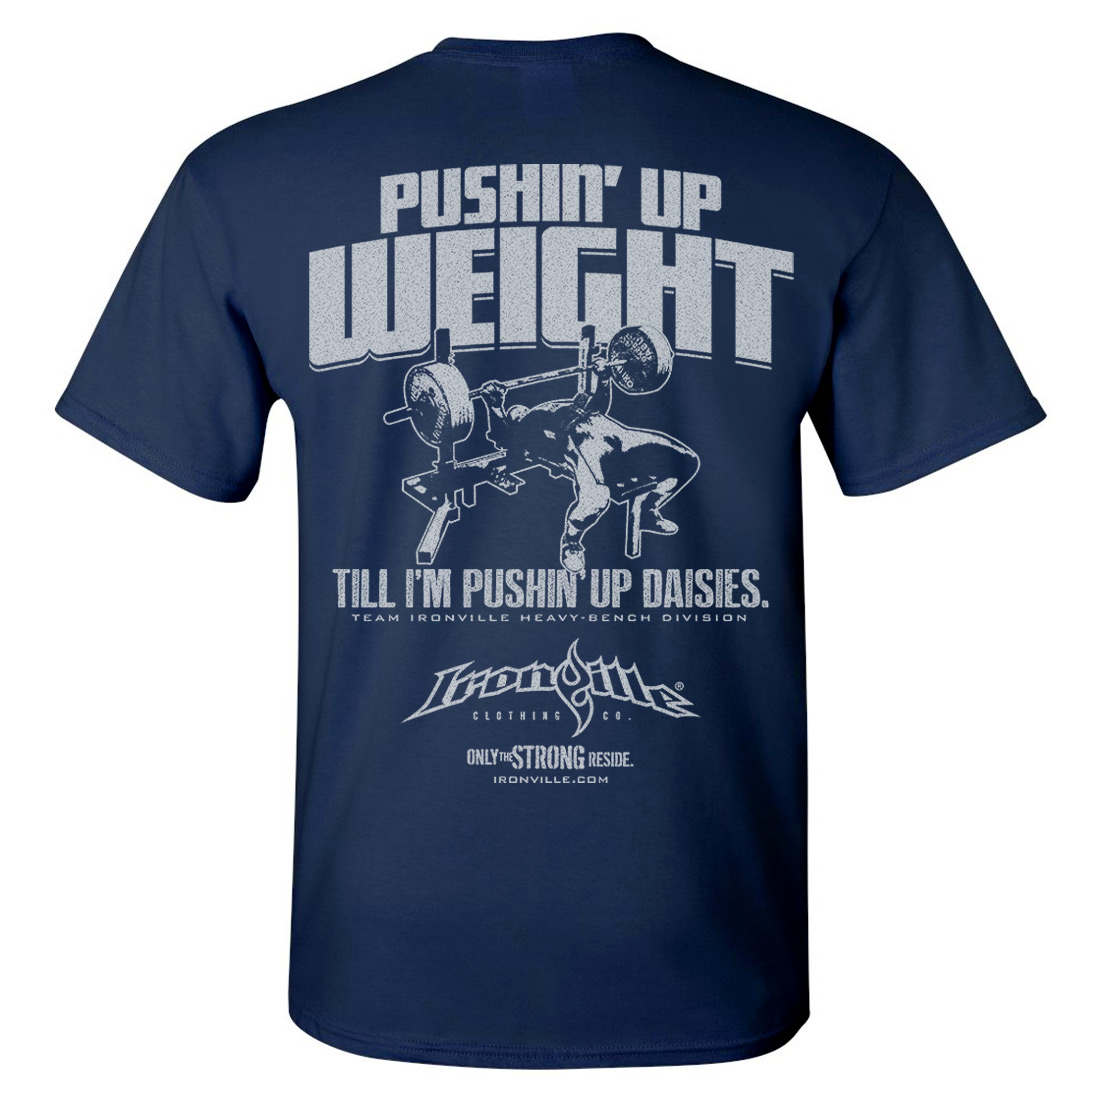 https://www.ironville.com/wp-content/uploads/2015/09/pushin-up-weight-till-im-pushin-up-daisies-bench-press-gym-t-shirt-navy-blue.jpg